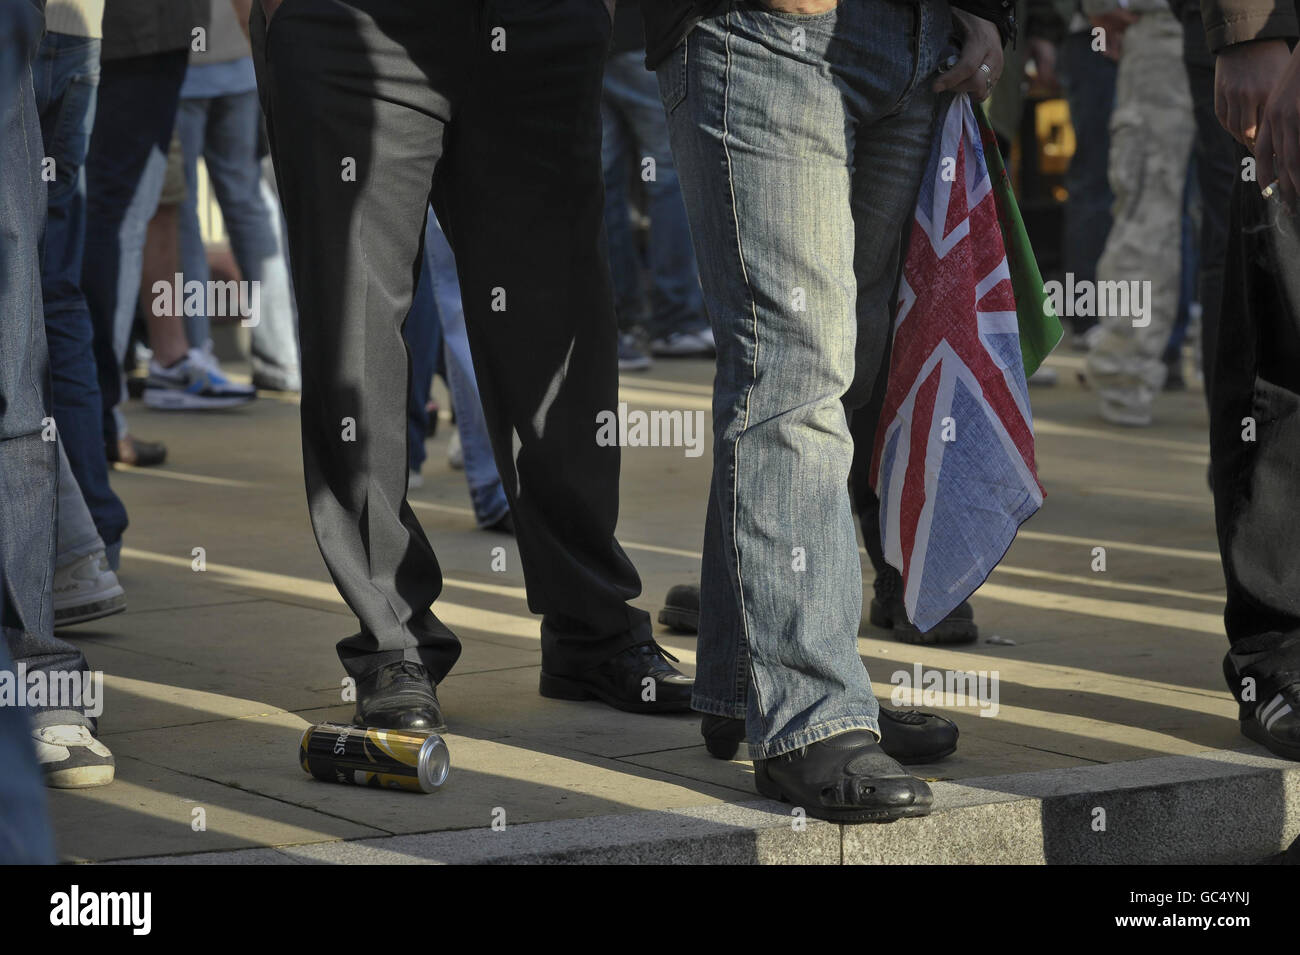 Ein Protestant der Walisischen Verteidigungsliga hält eine Unionsflagge, da die Their-Gruppe von den antifaschistischen Demonstranten während eines Protestes in der Nähe von Castle Square, Swansea, Wales, getrennt gehalten wird. Stockfoto